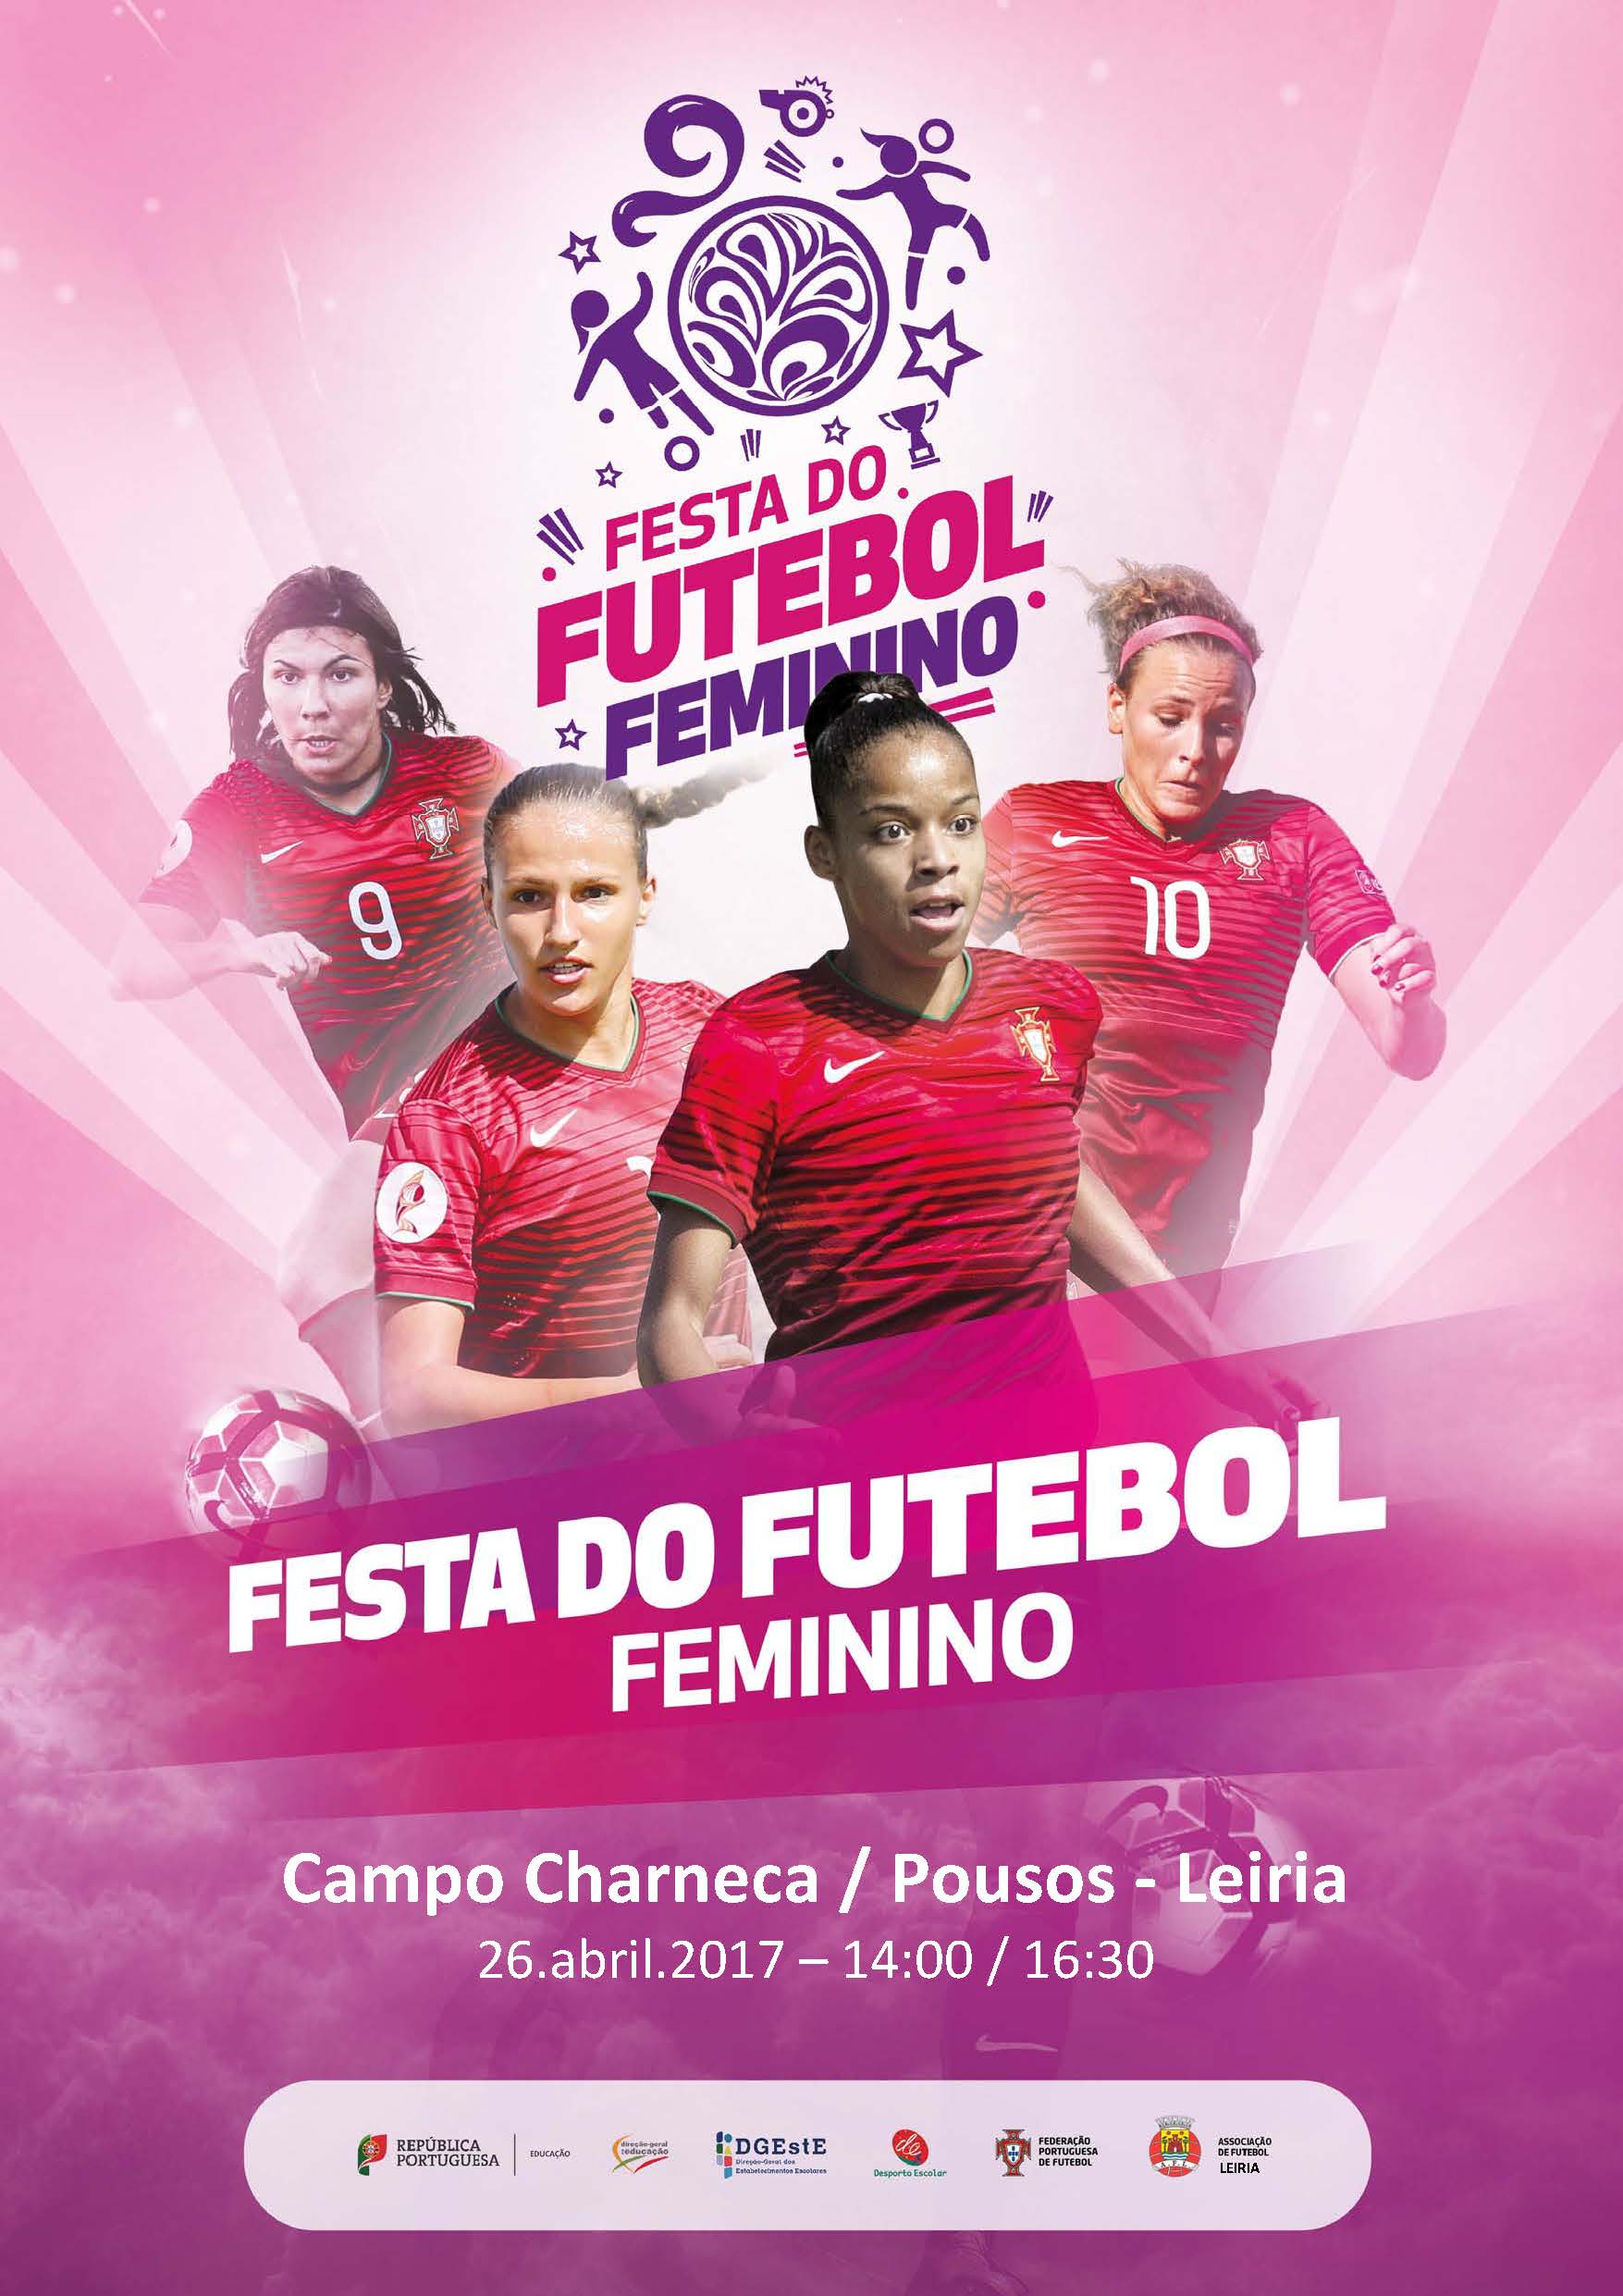 Festa do Futebol Feminino a 26.04.2017